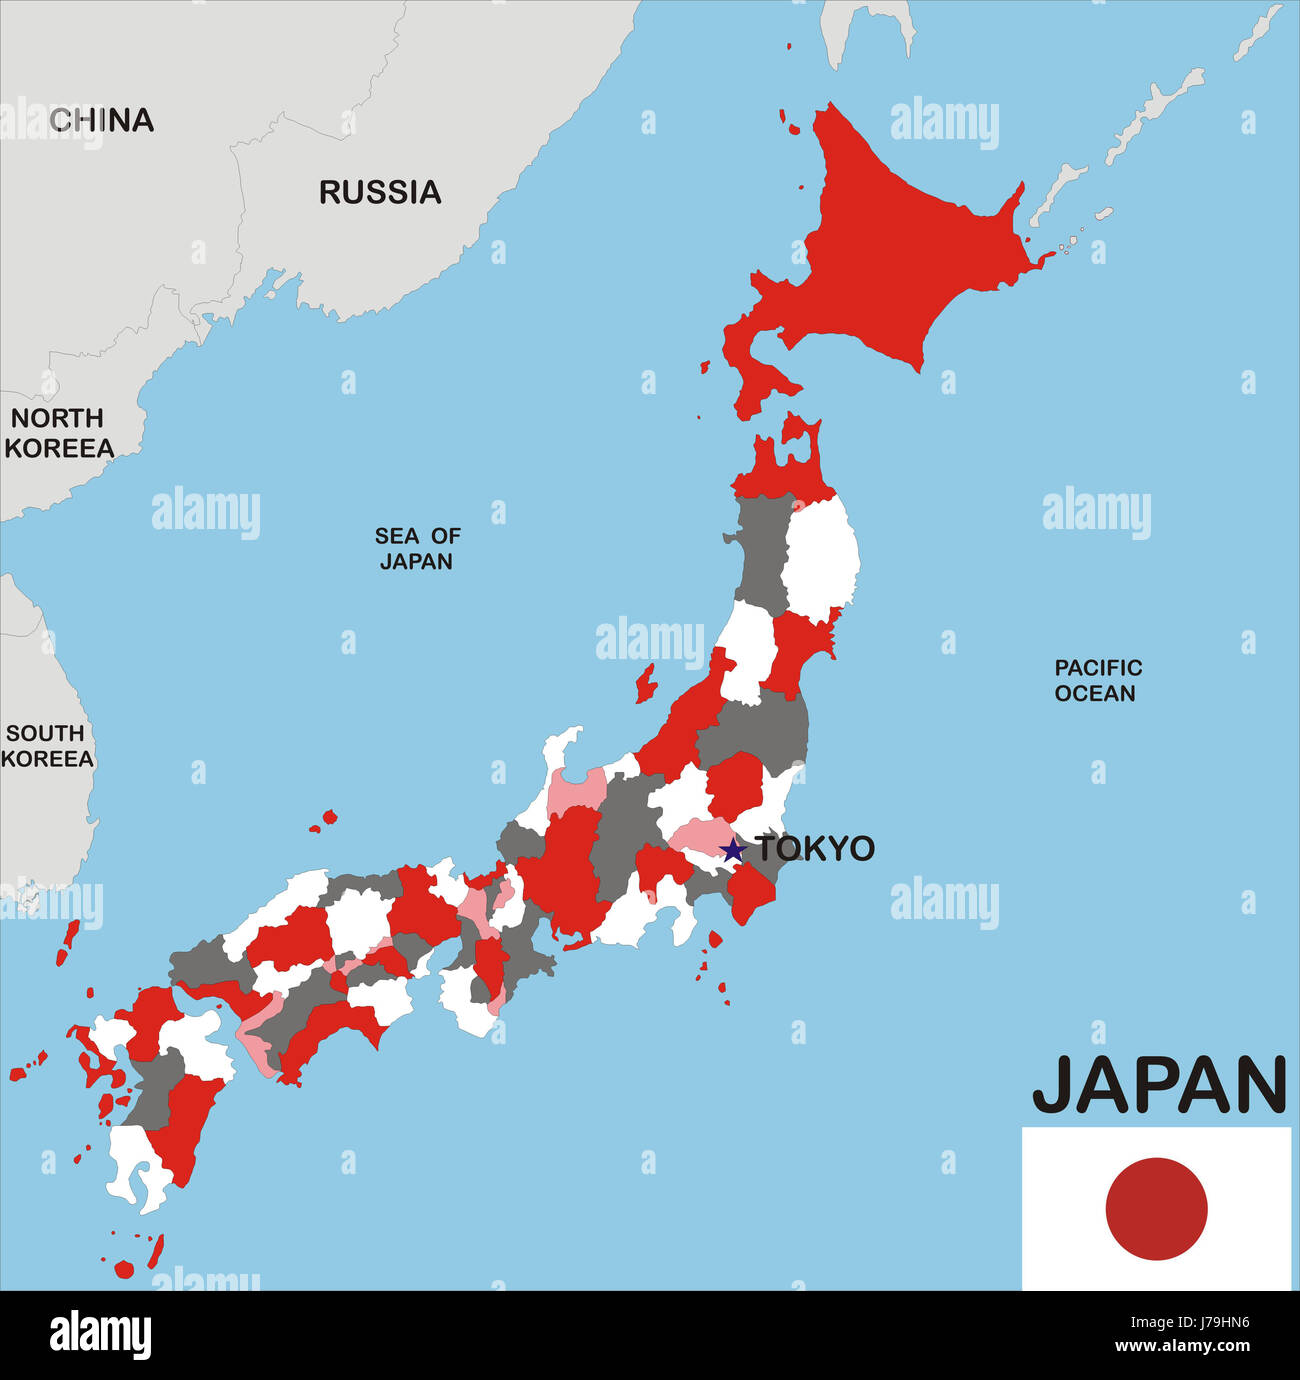 Giappone cartina immagini e fotografie stock ad alta risoluzione - Alamy